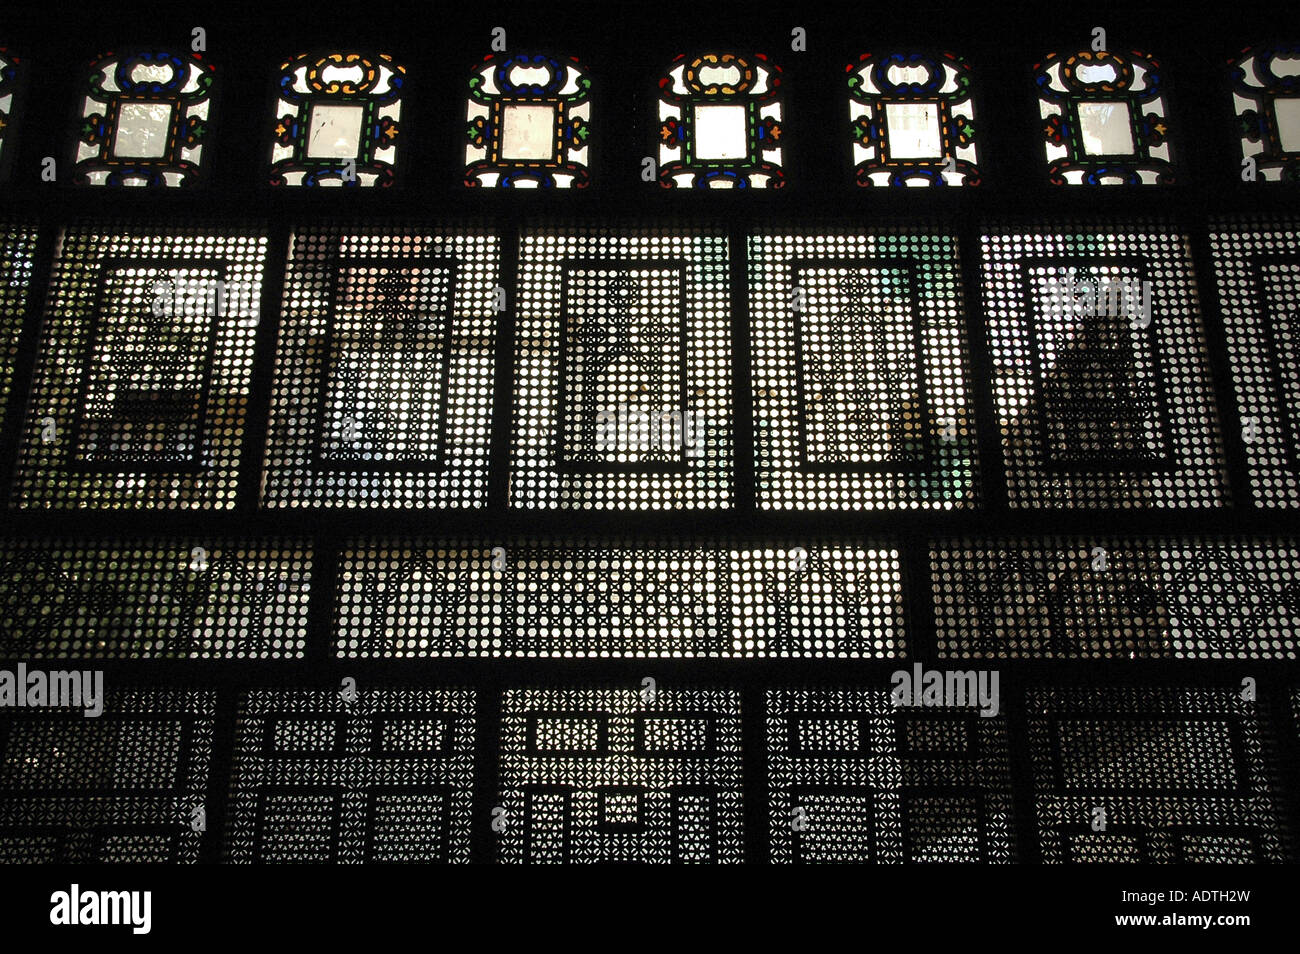 La fenêtre de style égyptien Mashrabiya, entourée de treillis en bois sculpté de la maison de l'ère ottomane Bayt Al-Suhaymi du XVIIe siècle au Caire, en Égypte Banque D'Images